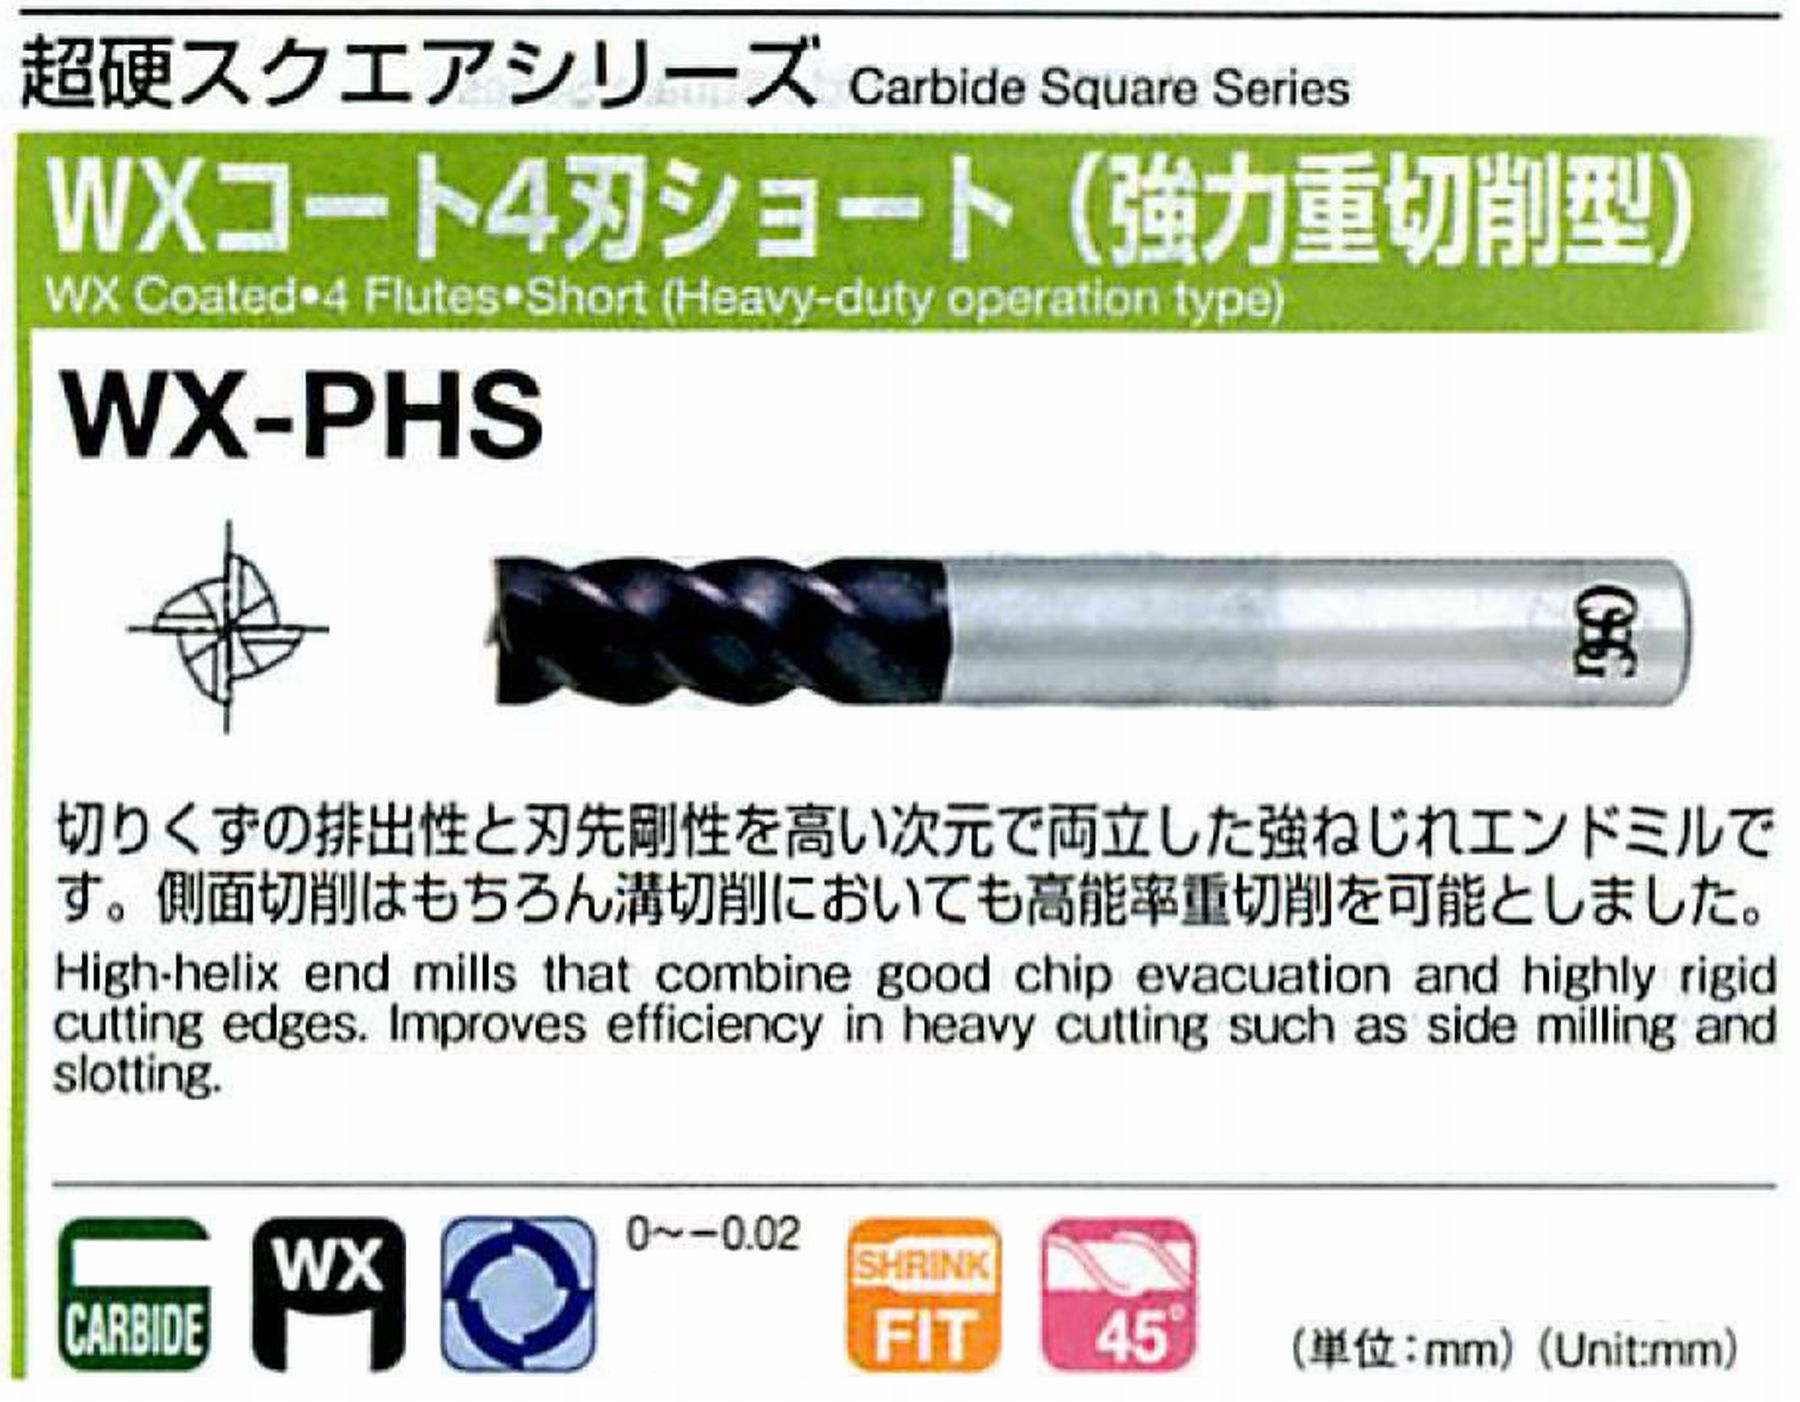 オーエスジー/OSG WXコート4刃 ショート(強力重切削型) WX-PHS 外径10 全長80 刃長22 シャンク径10mm